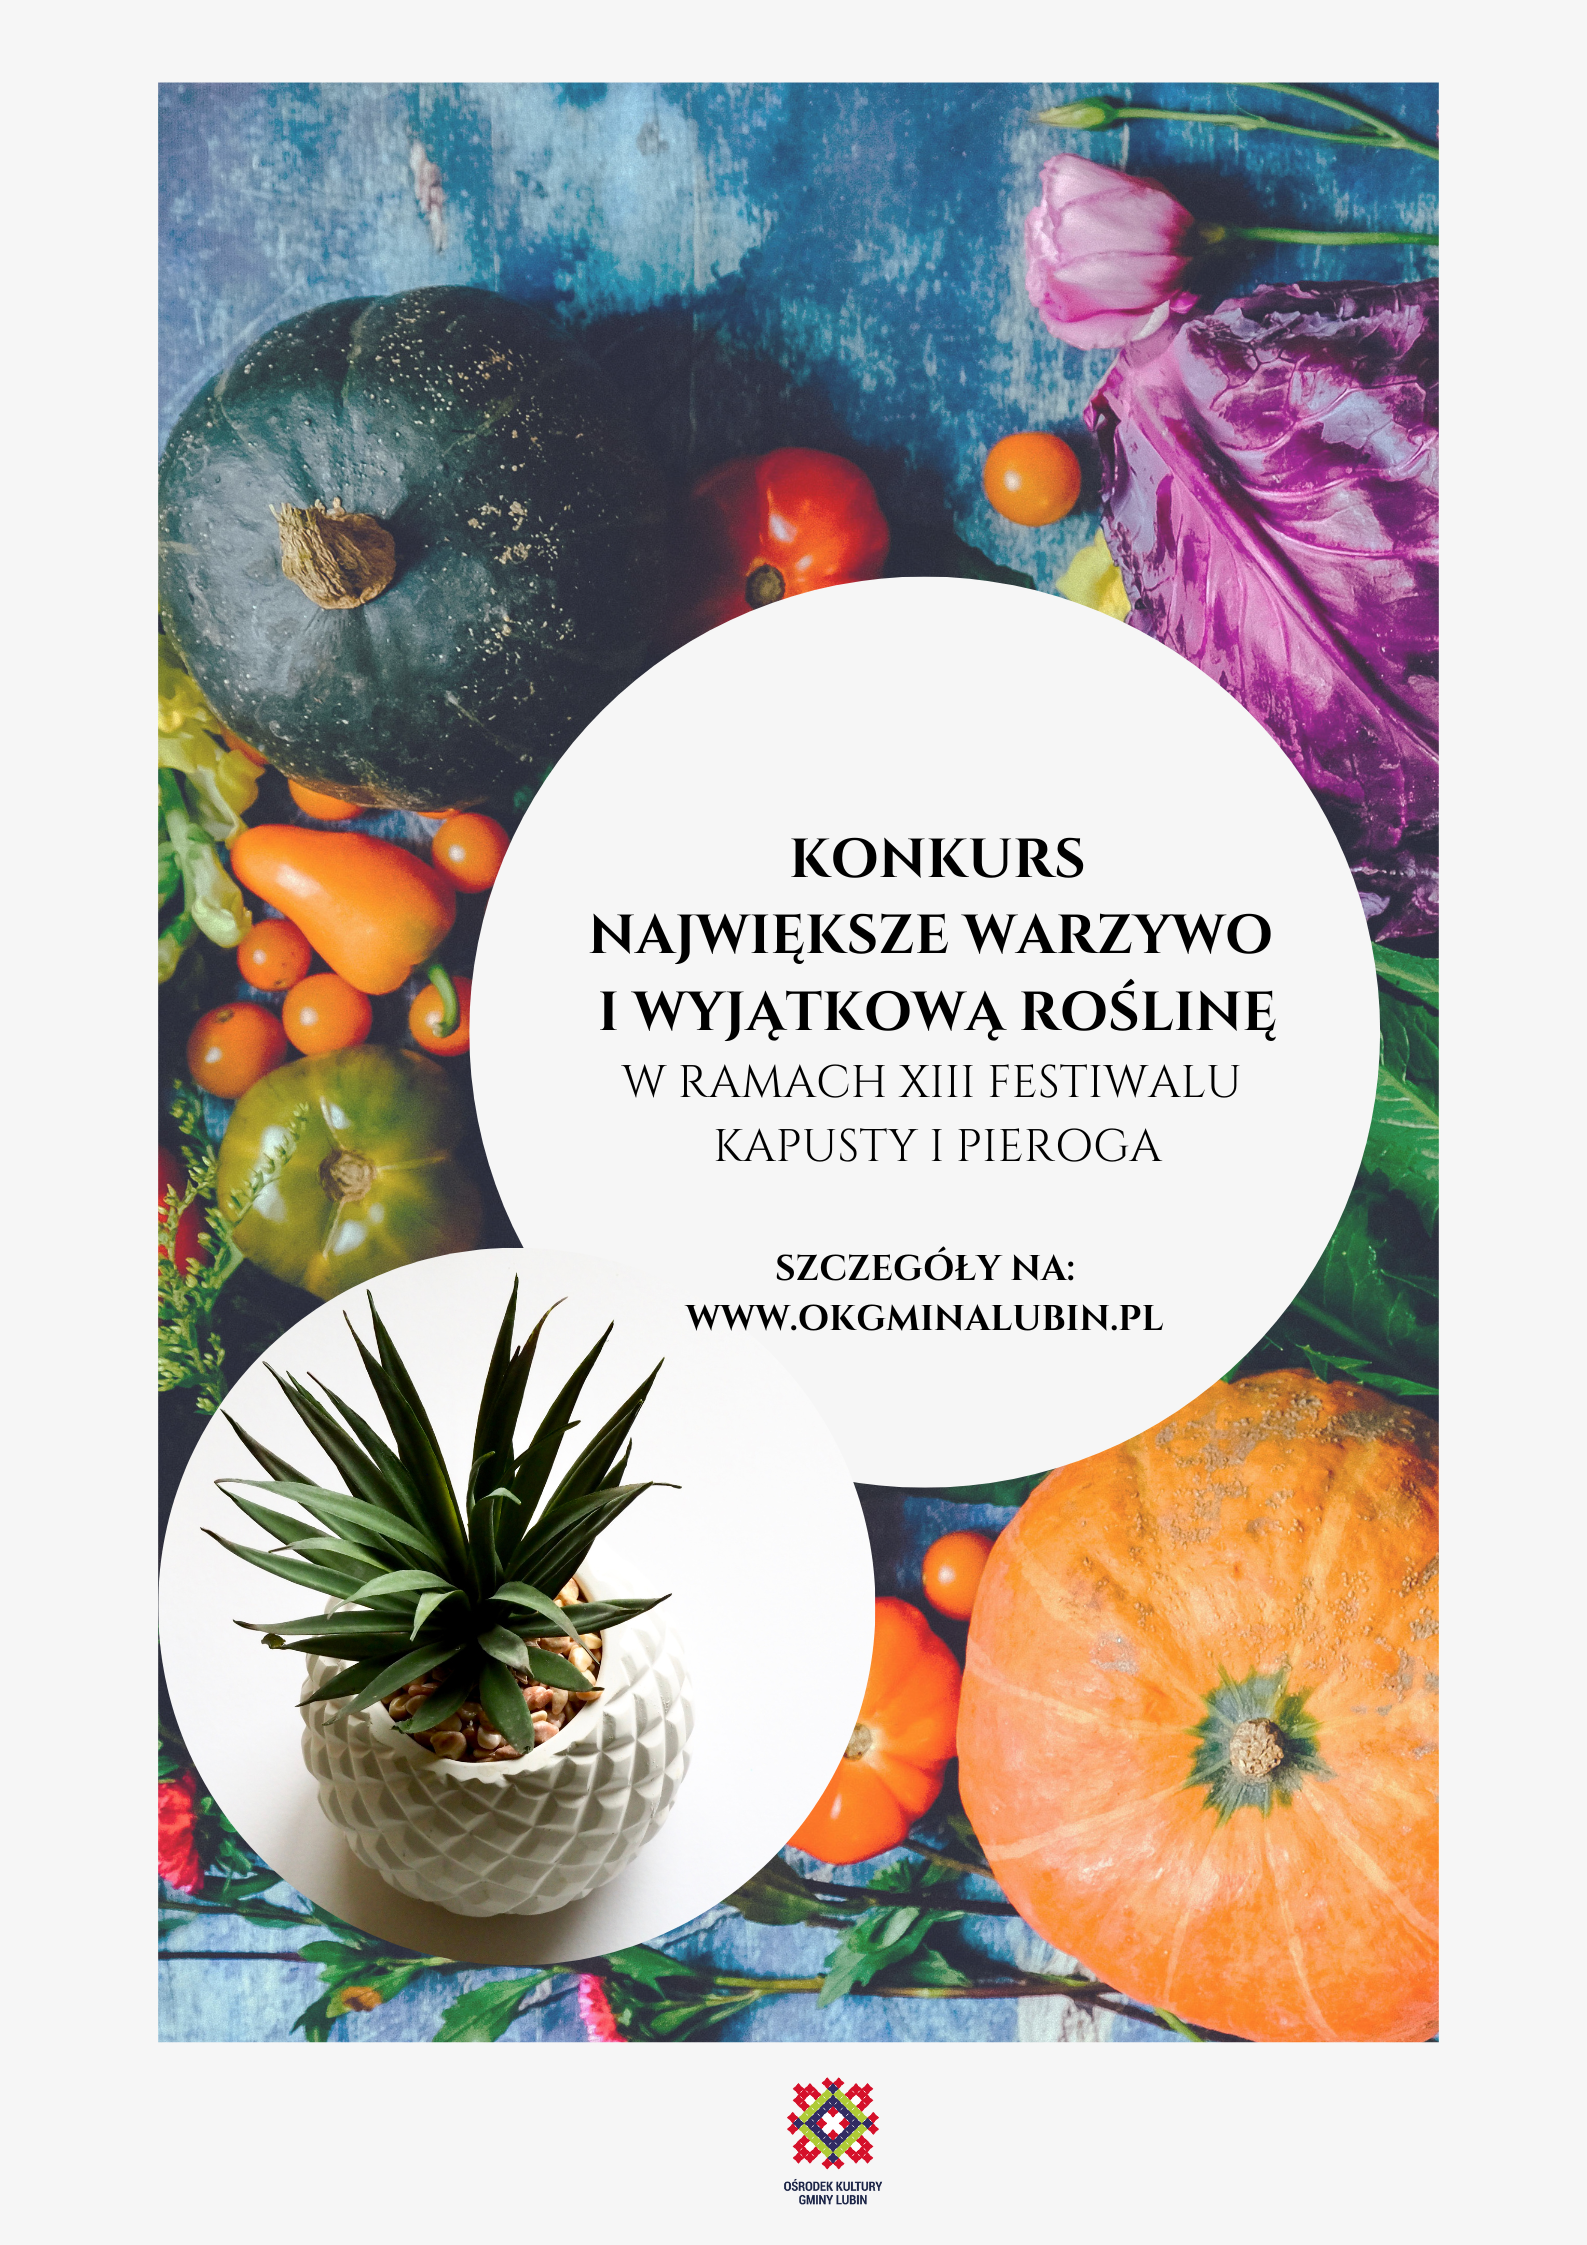 konkurs na największe warzywo i wyjątkową roślinę organizowany w ramach festiwalu kapusty i pieroga w Księginicach